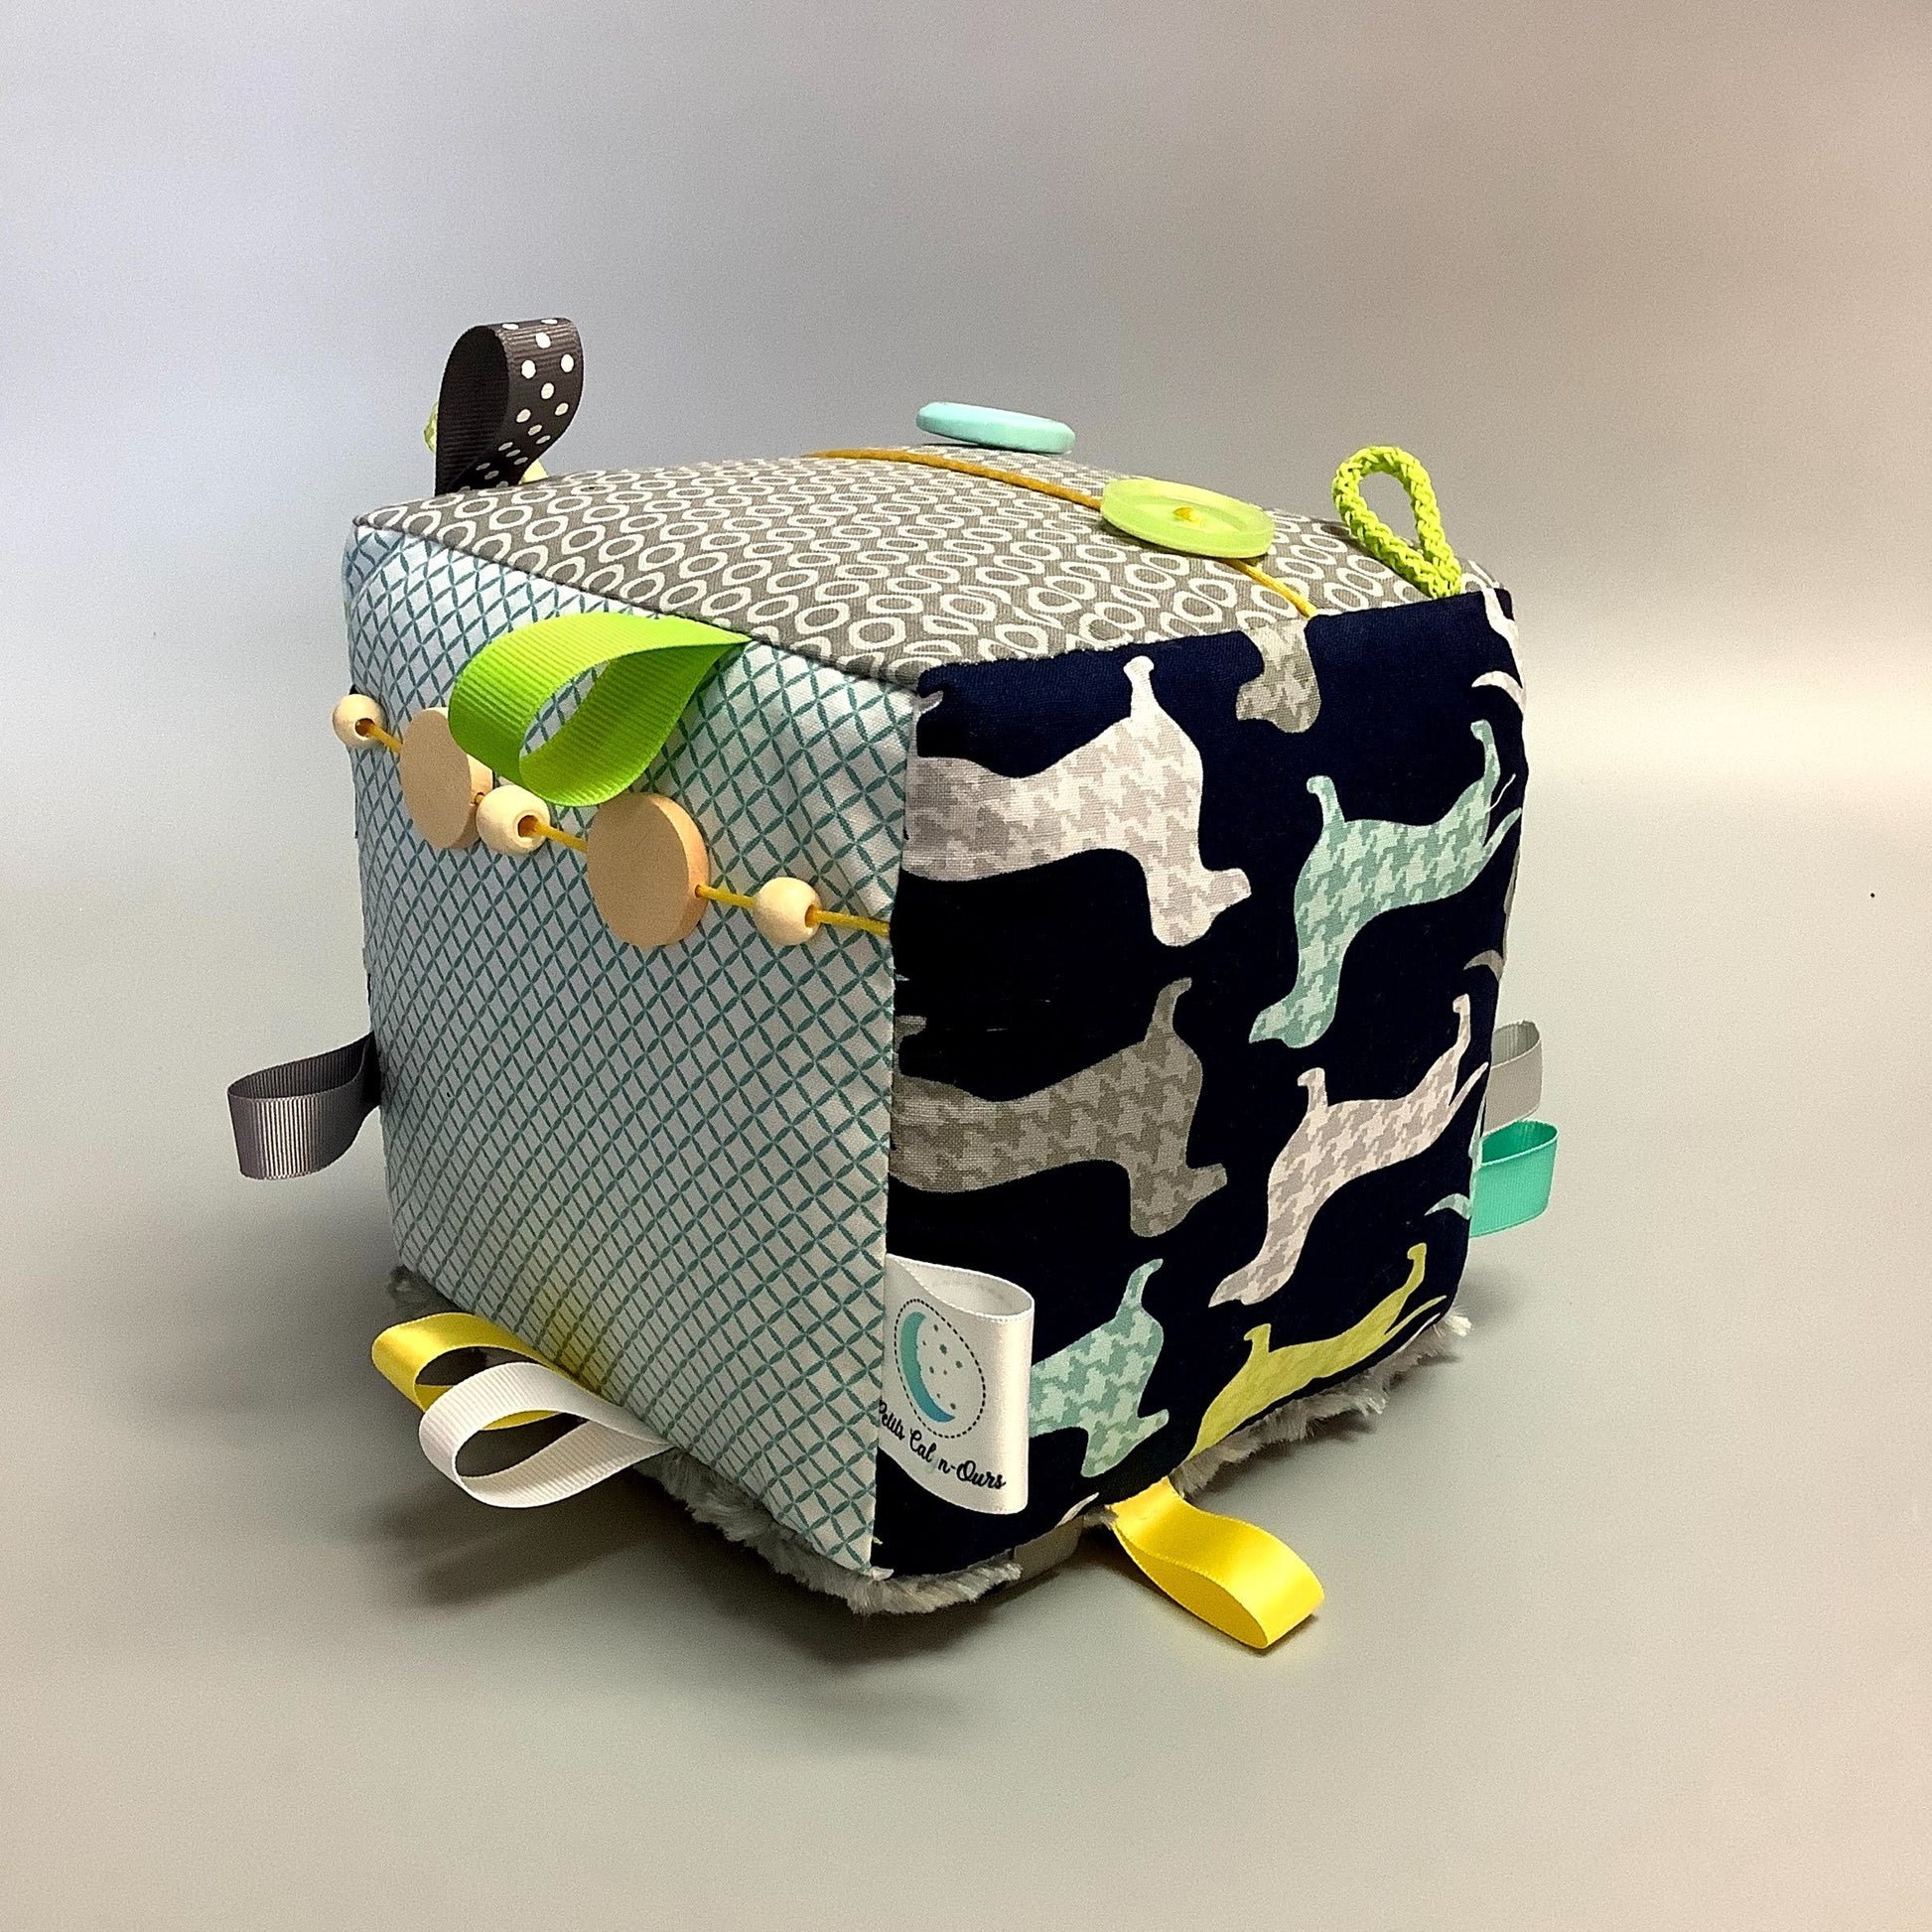 Cube d'éveil pour enfant  Fait en coton avec rubans et petits accessoires de bois. Le cube fait du bruit lorsqu'il est agité.  Ce produit unique est fait au Québec.